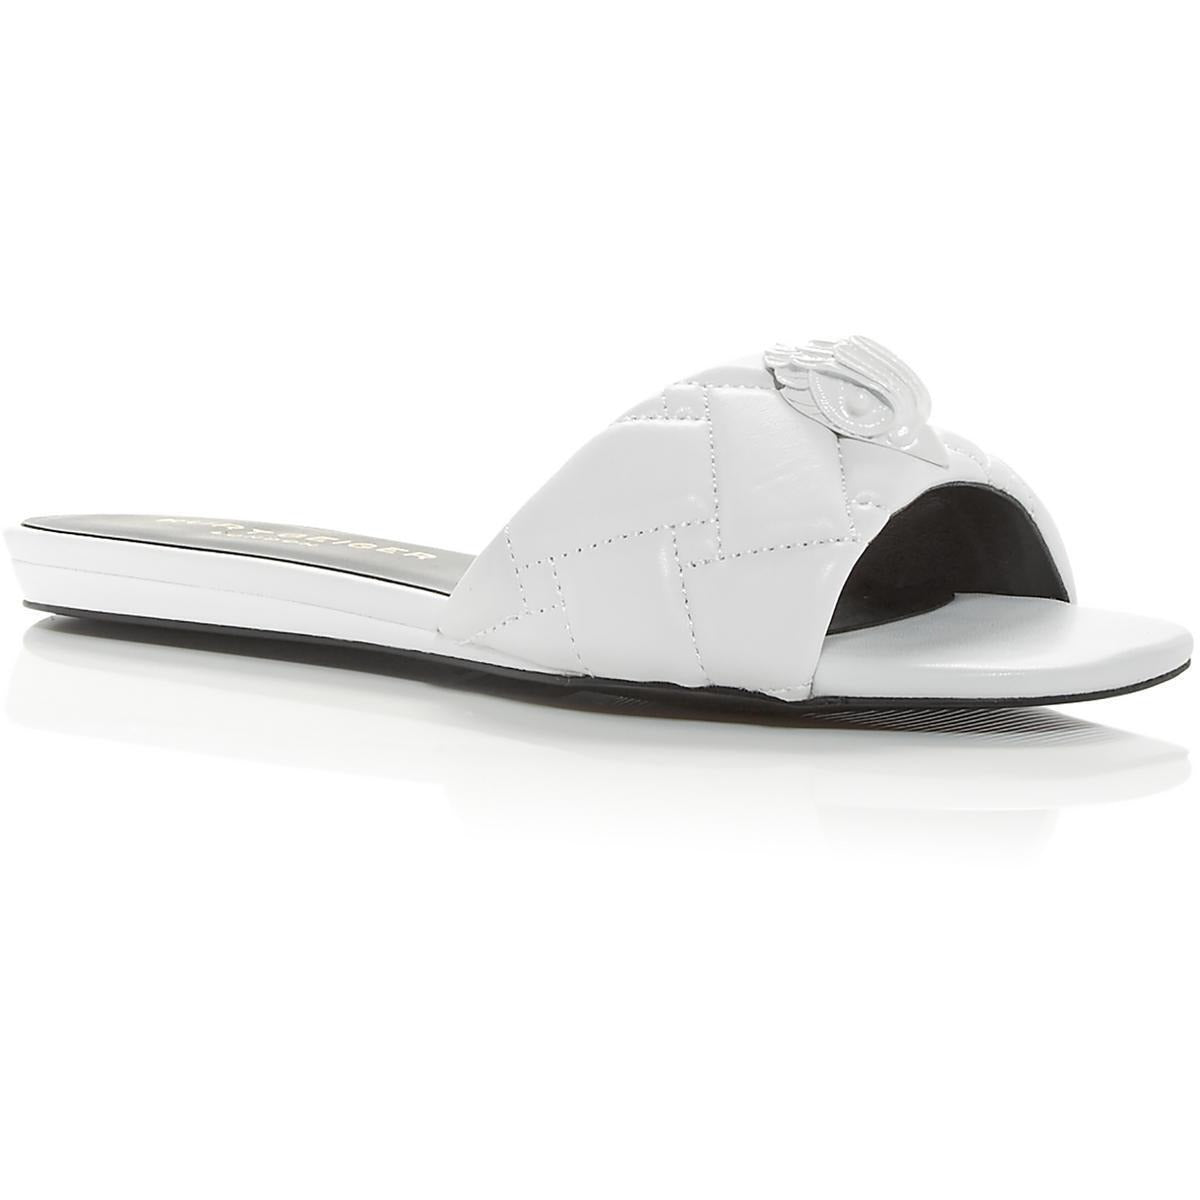 Sz. 5.5 Kurt Geiger London Kensington Slide Sandals-Shoes Quilted Leather Retail $140.00